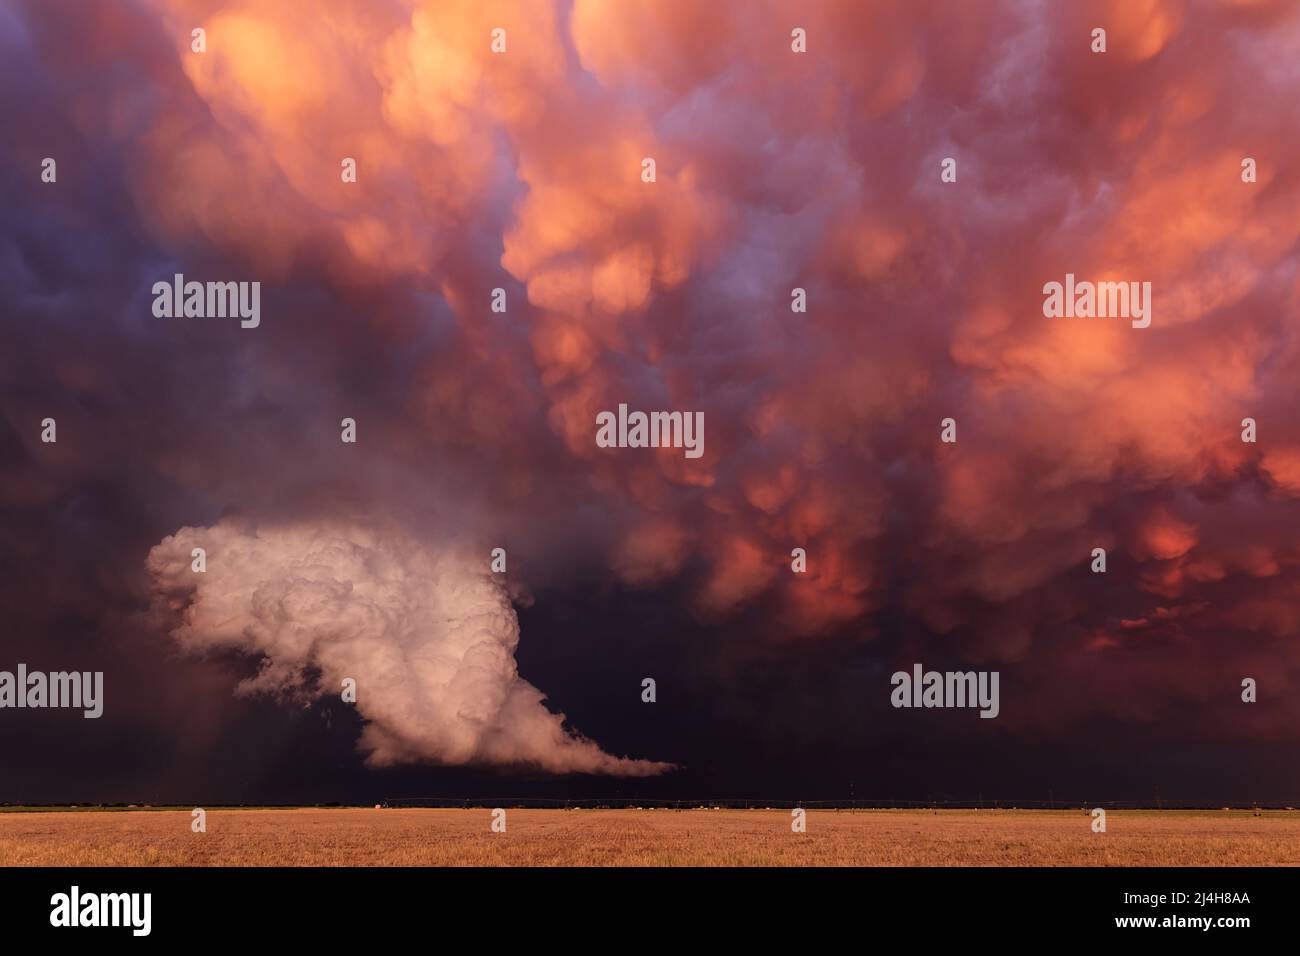 Des mammatus spectaculaires se cachent derrière une tempête au coucher du soleil près de Lubbock, Texas Banque D'Images